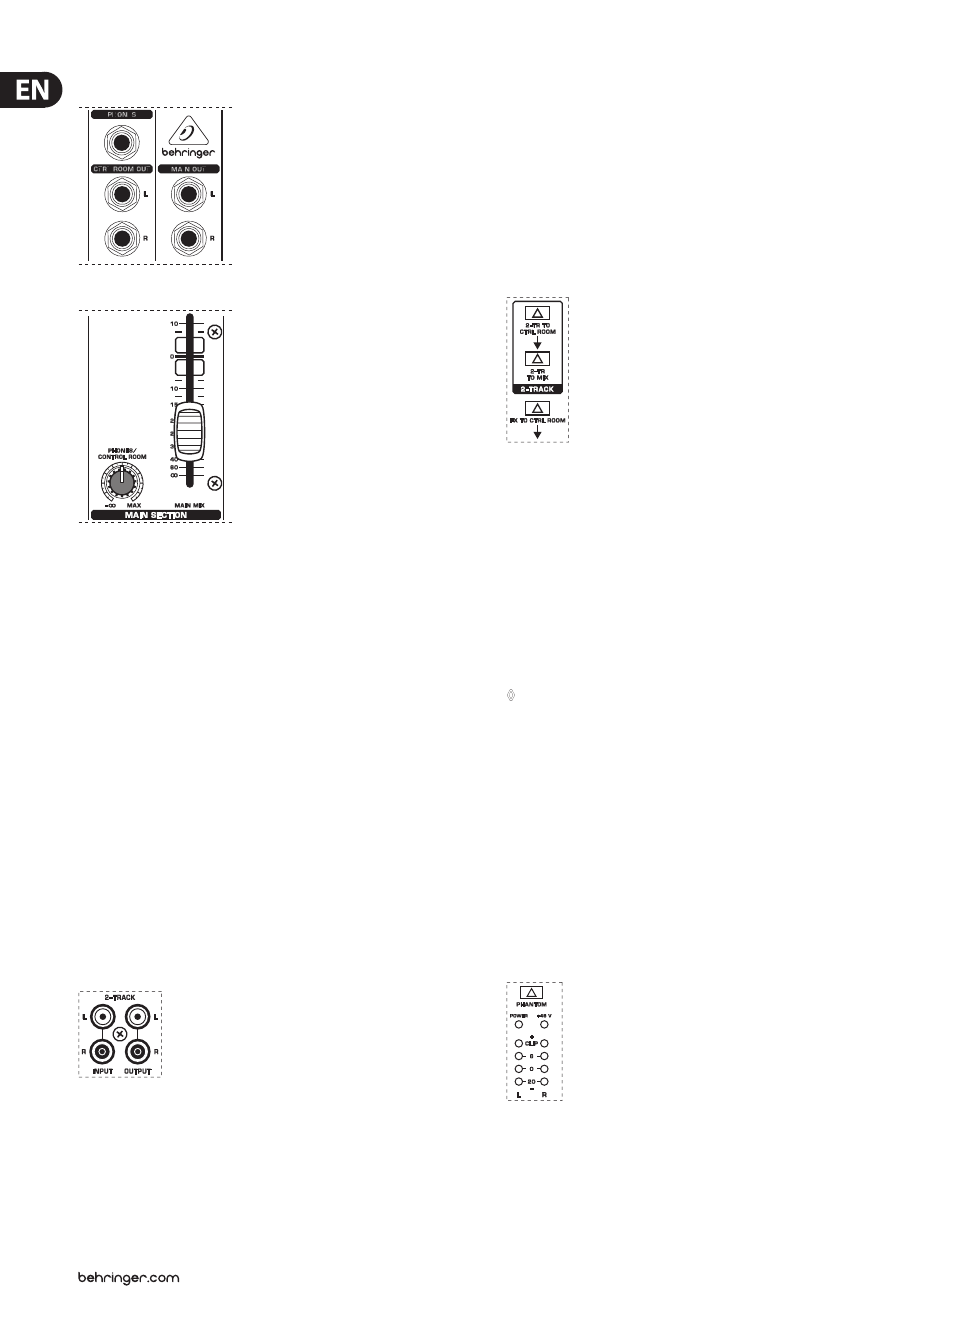 Behringer eurorack ub802 power supply schematic